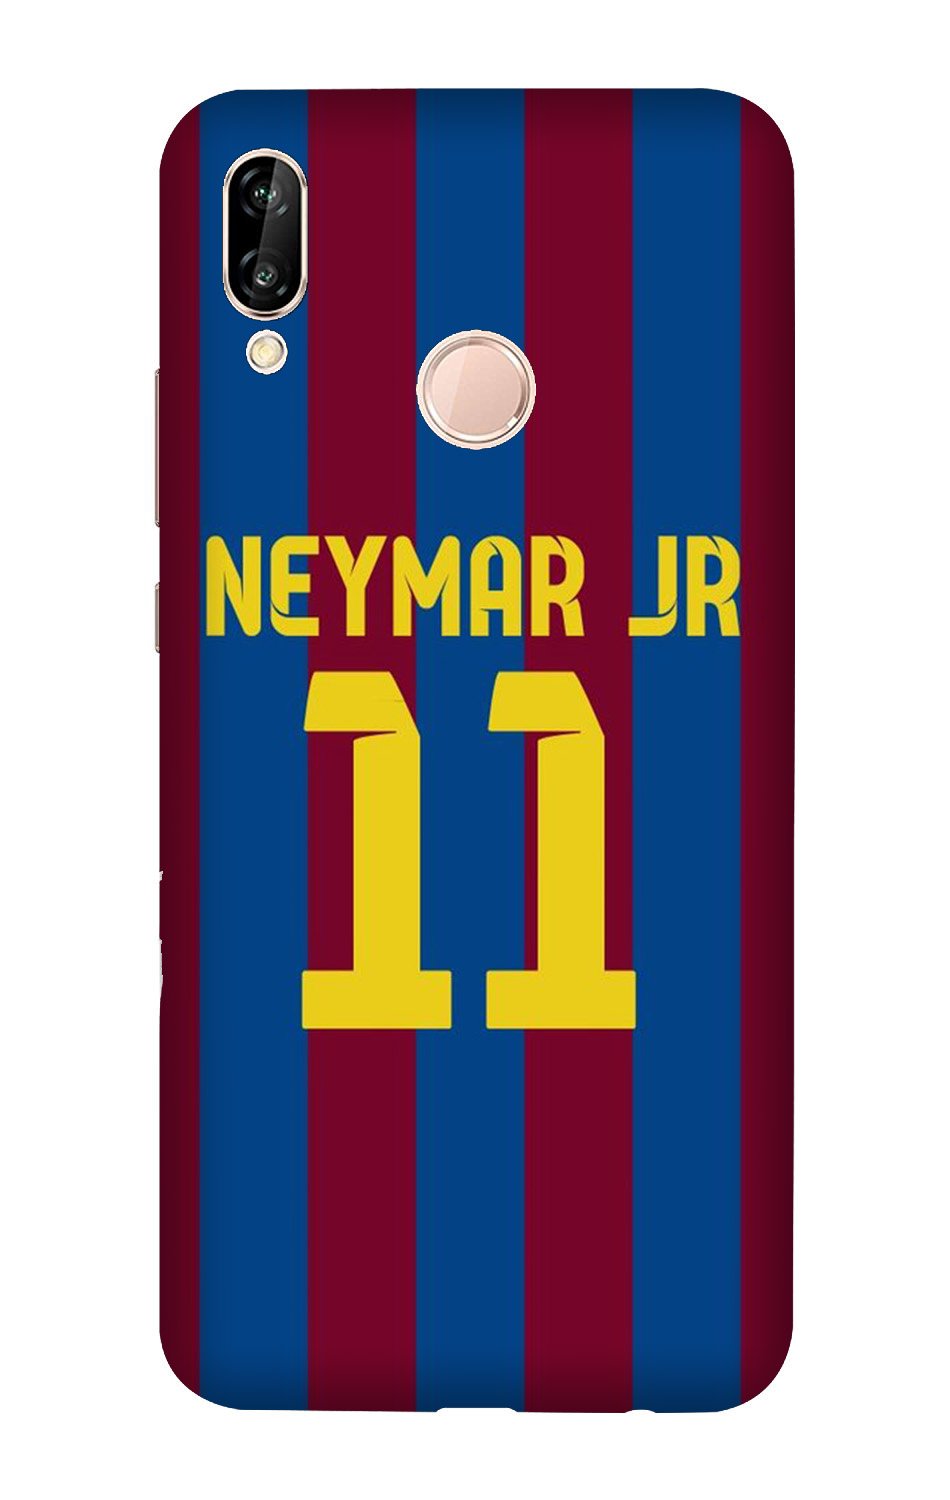 Neymar Jr Case for Vivo X21(Design - 162)